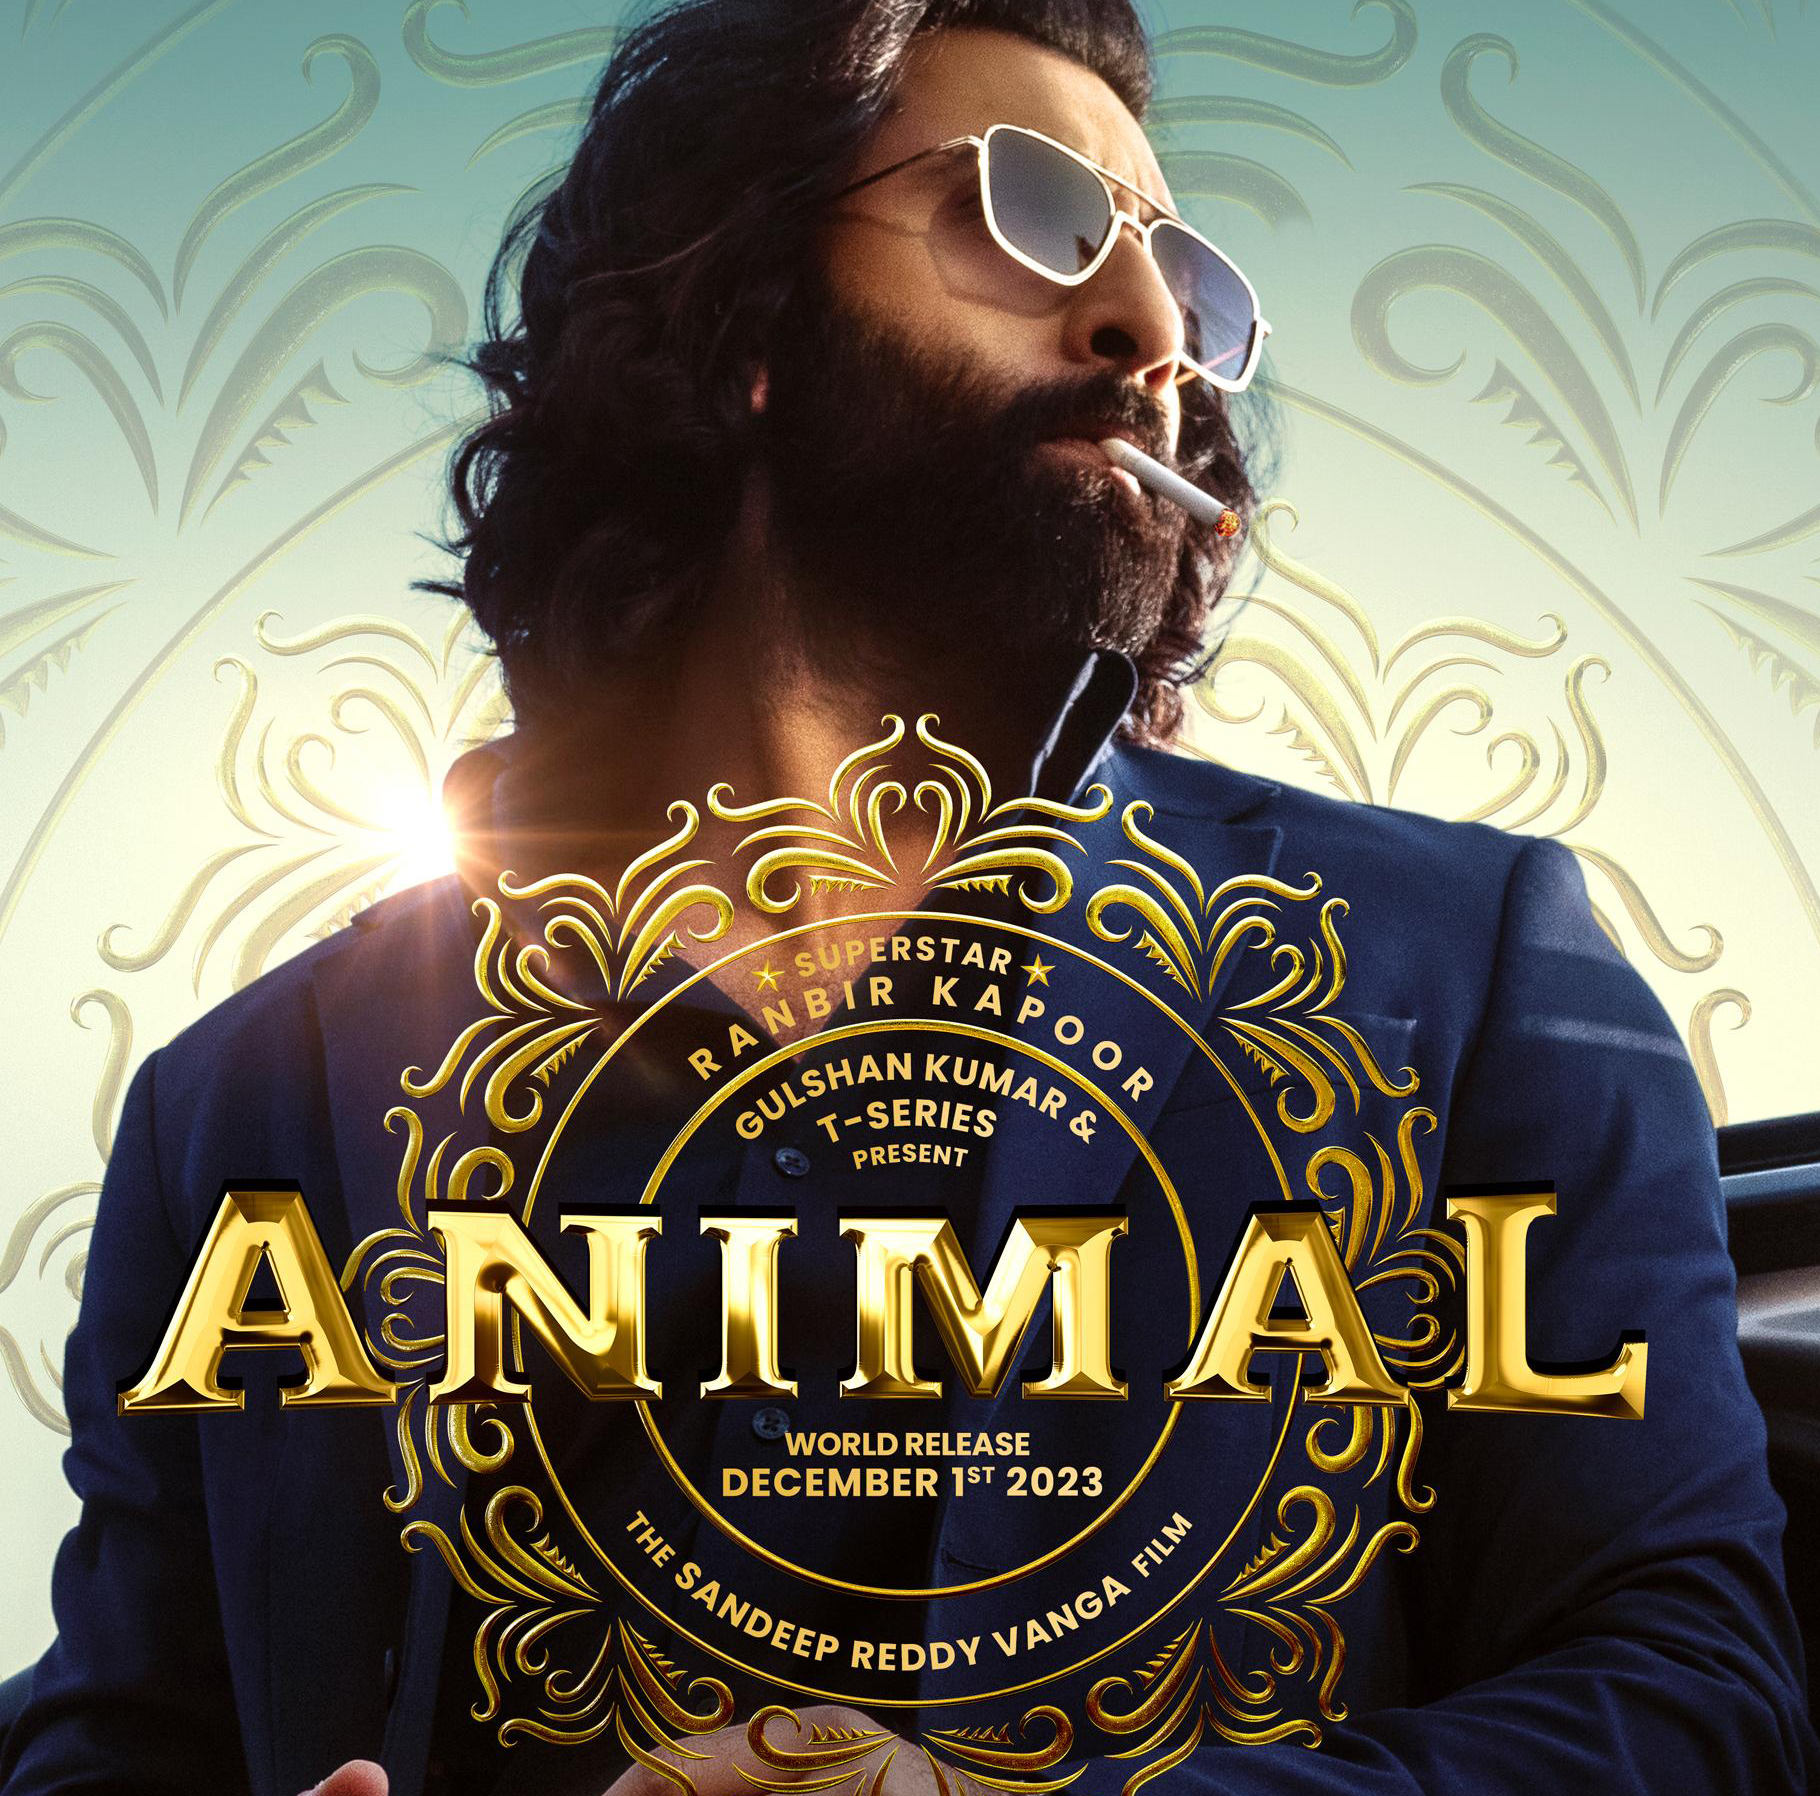 Animal Movie – Review